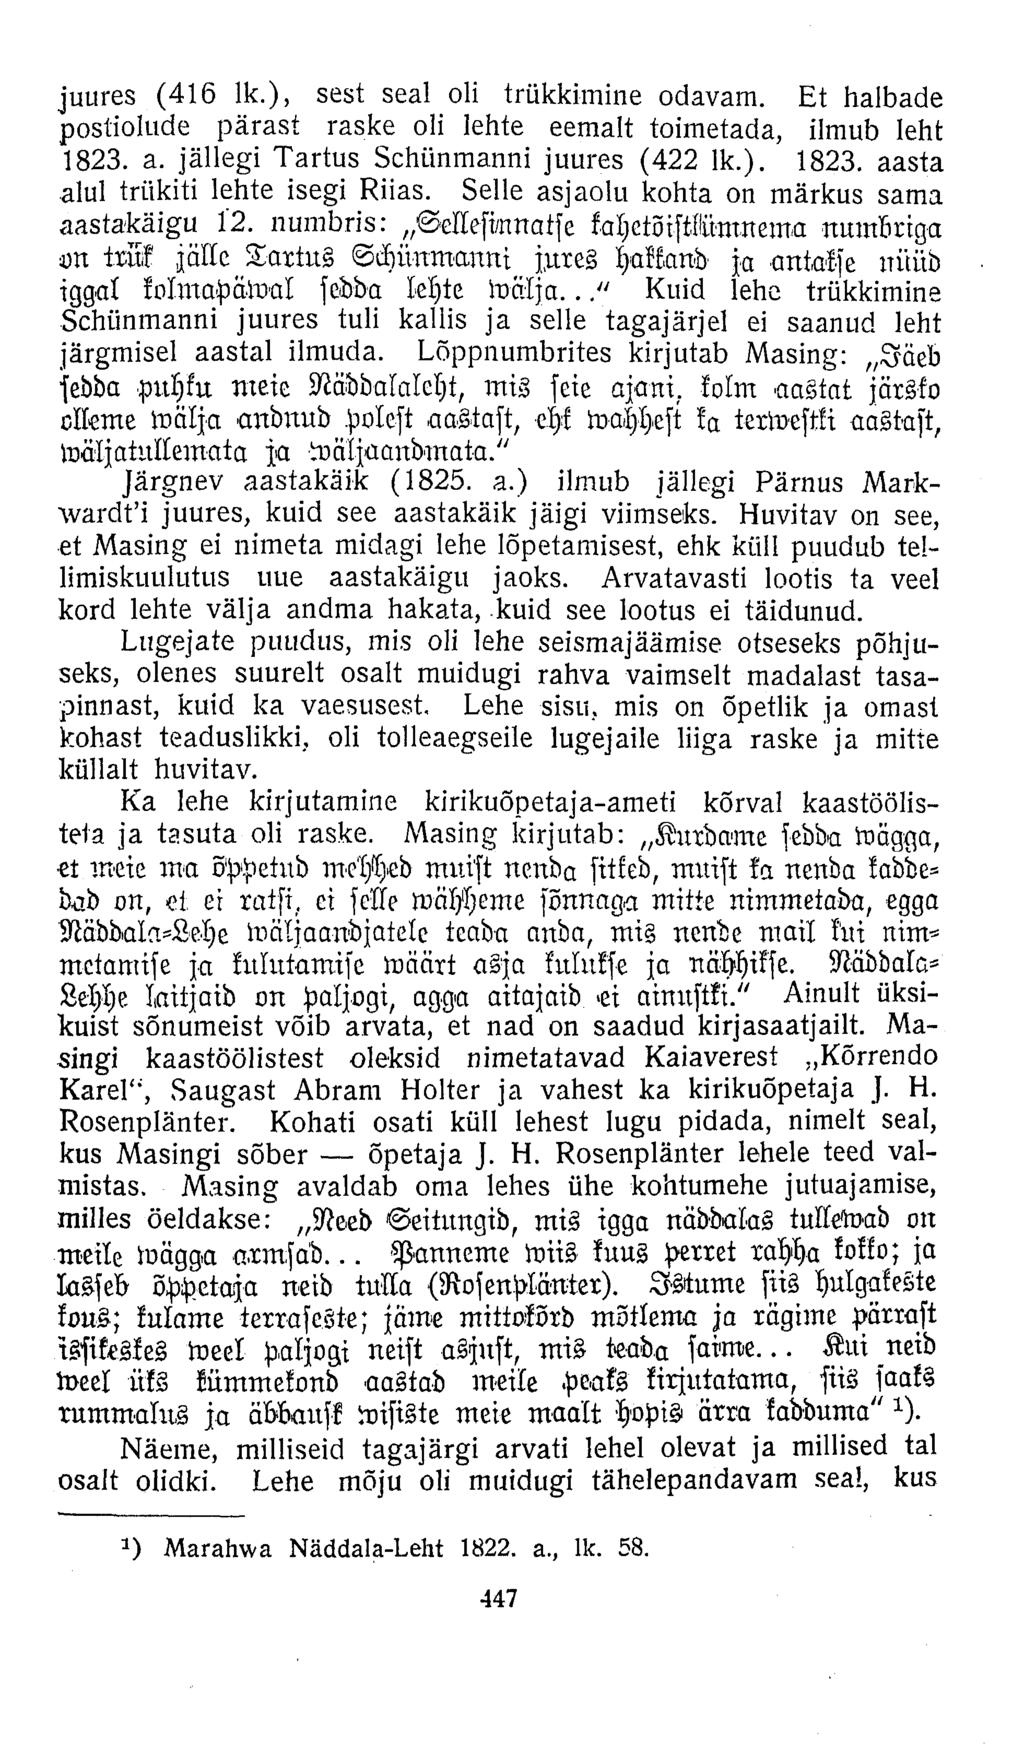 juures (416 lk.), sest seal oli trükkimine odavam. Et halbade postiolude pärast raske oli lehte eemalt toimetada, ilmub leht 1823. a. jällegi Tartus Schünmanni juures (422 lk.). 1823. aasta alul trükiti lehte isegi Riias.